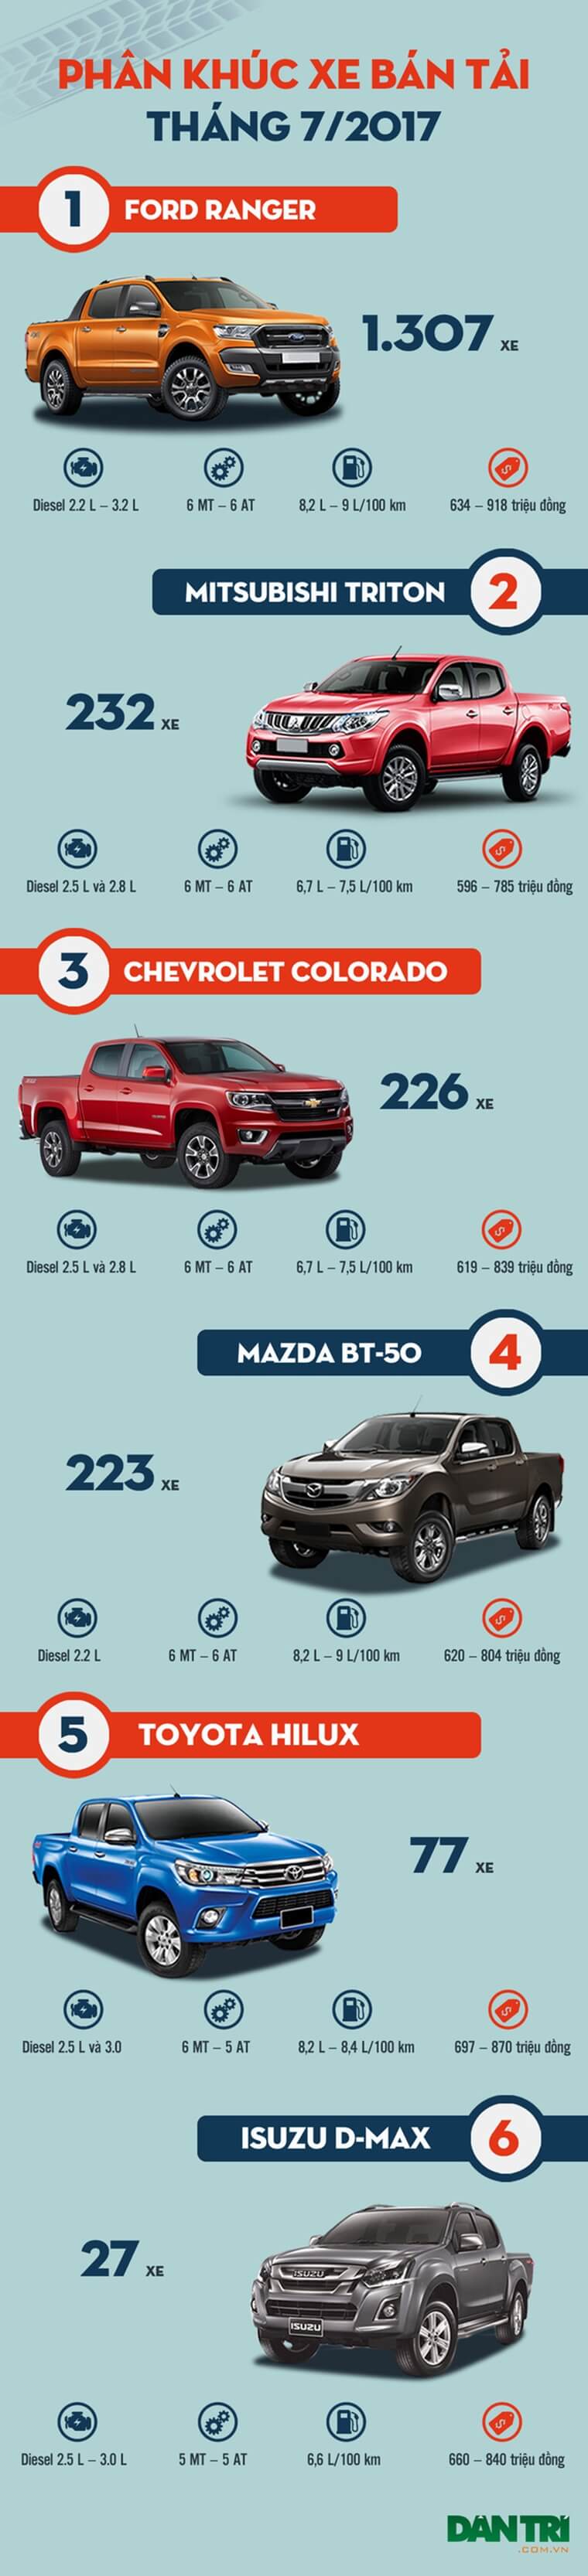 Top xe bán tải bán chạy nhất tại Việt Nam tháng 7/2017